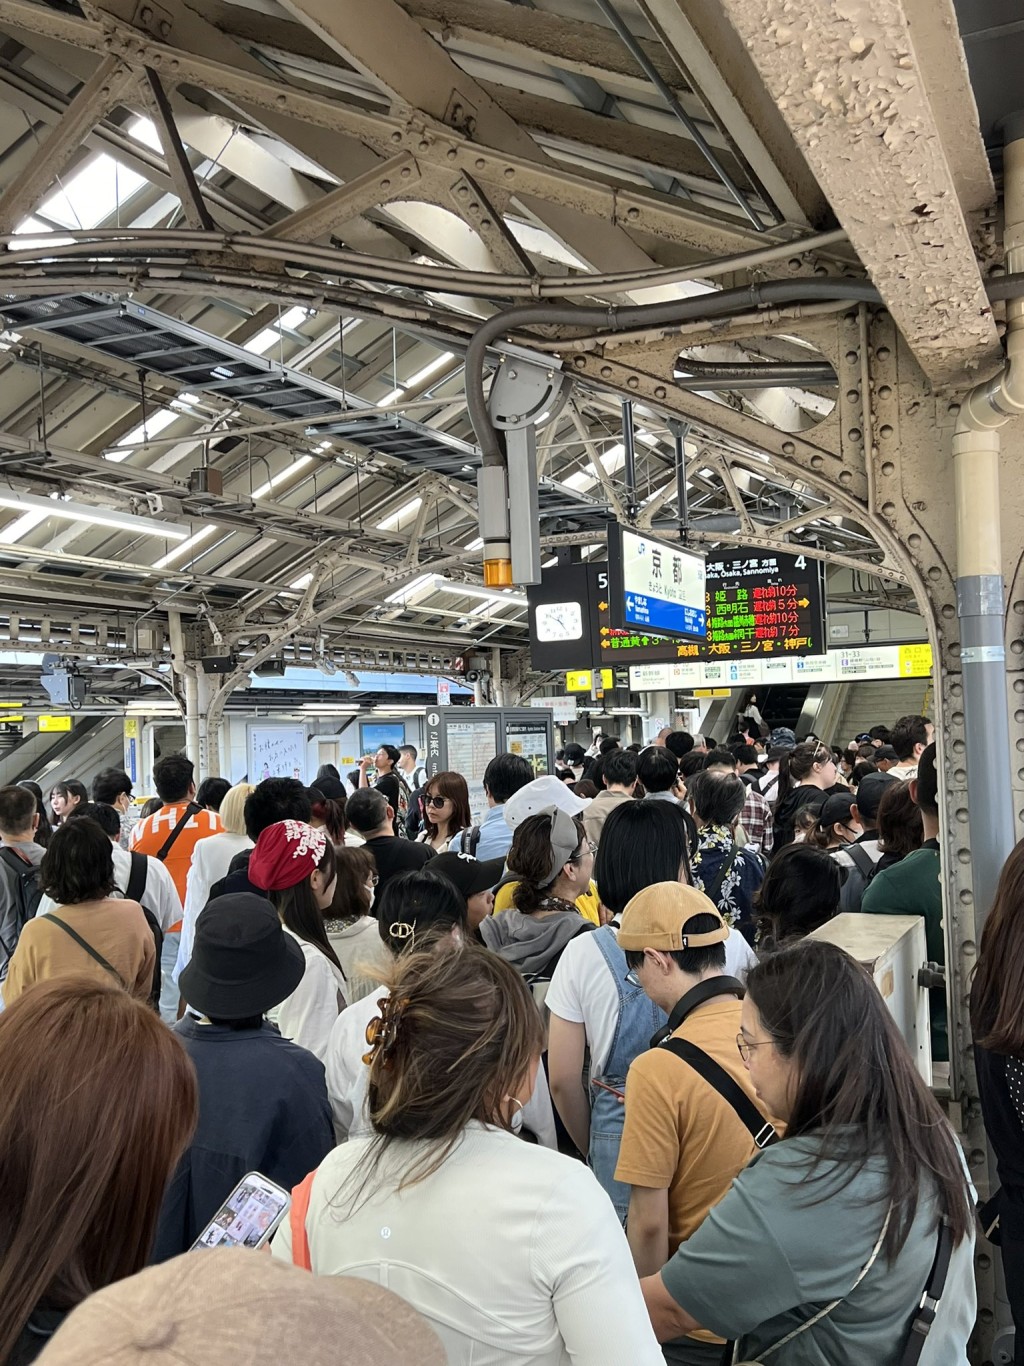 乘客从月台涌向车站大堂。 X